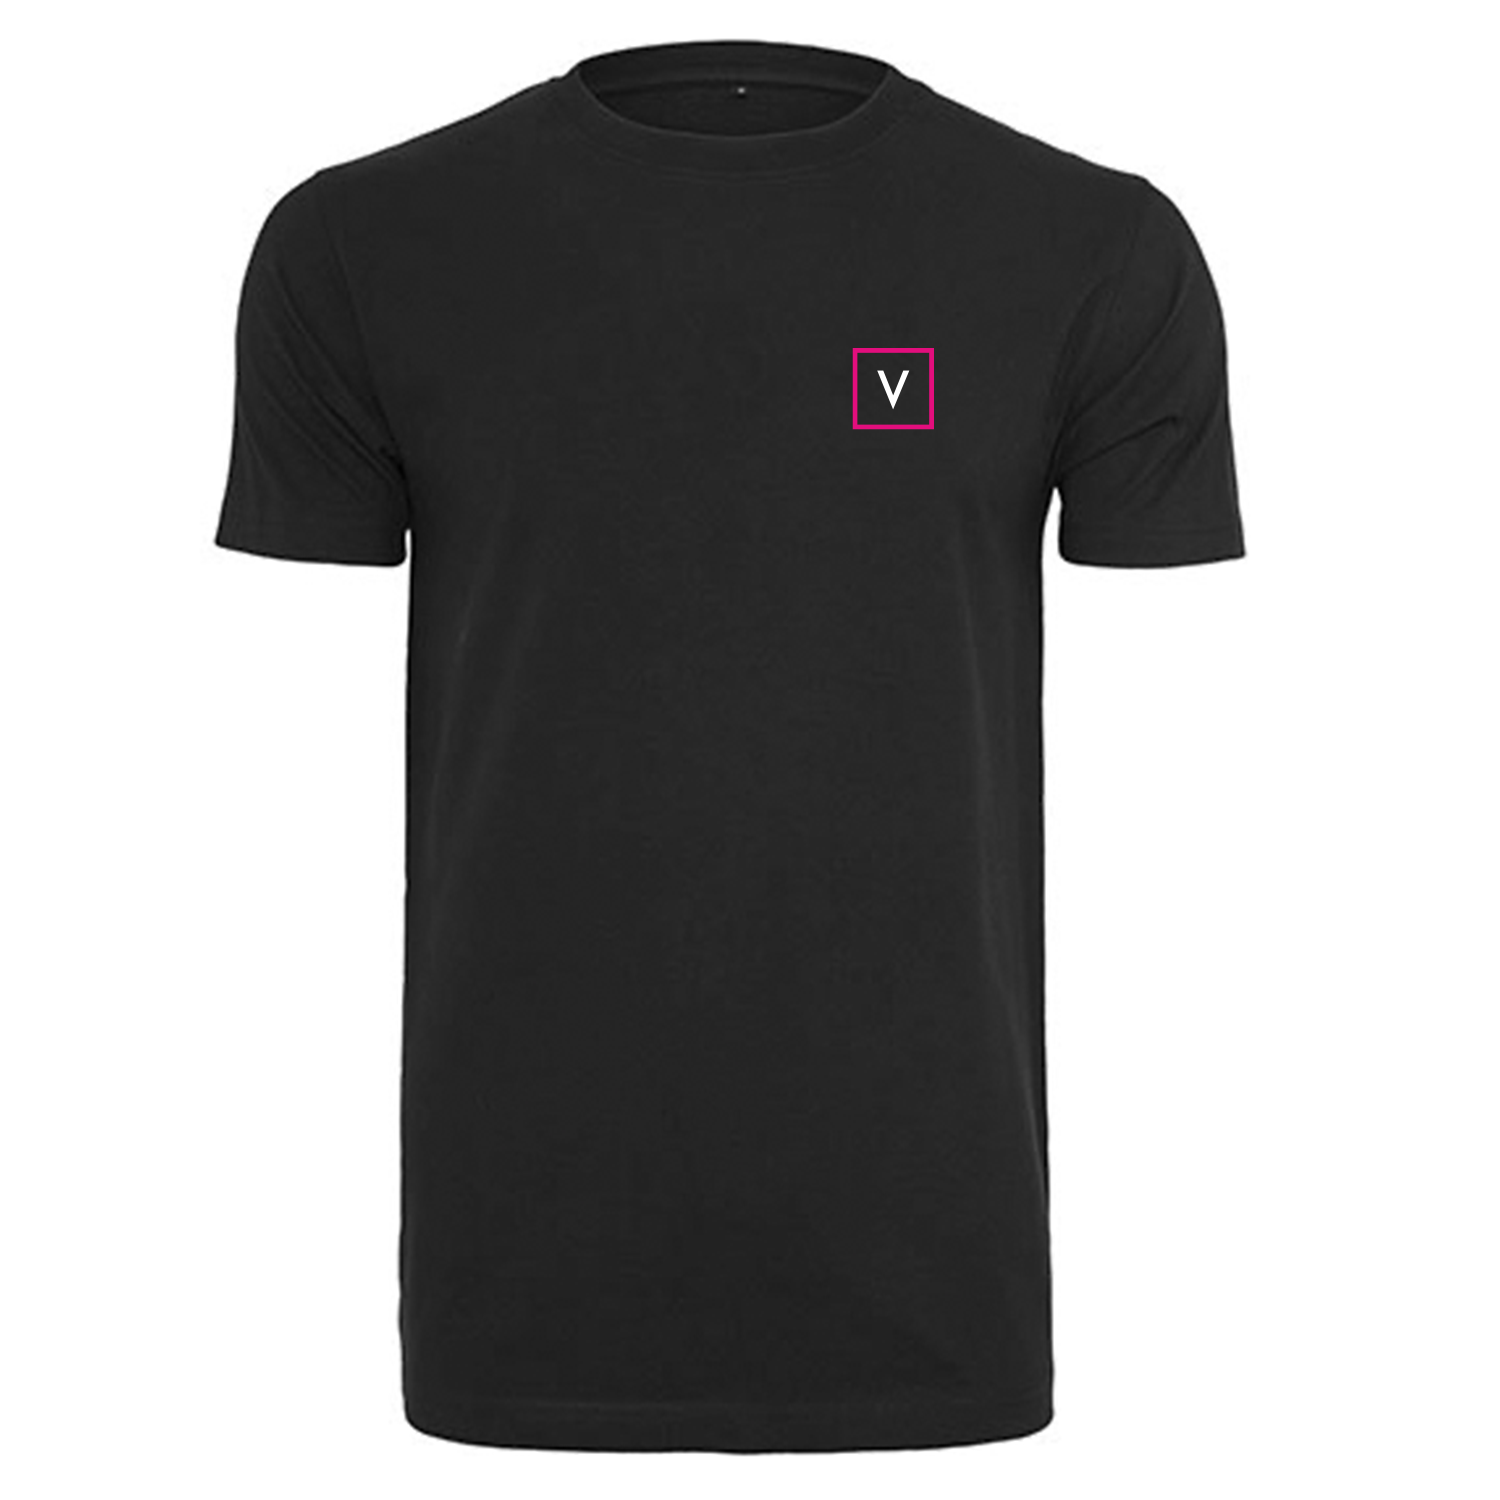 VENUS T-Shirt "V" - Schwarz/Weiß/Pink